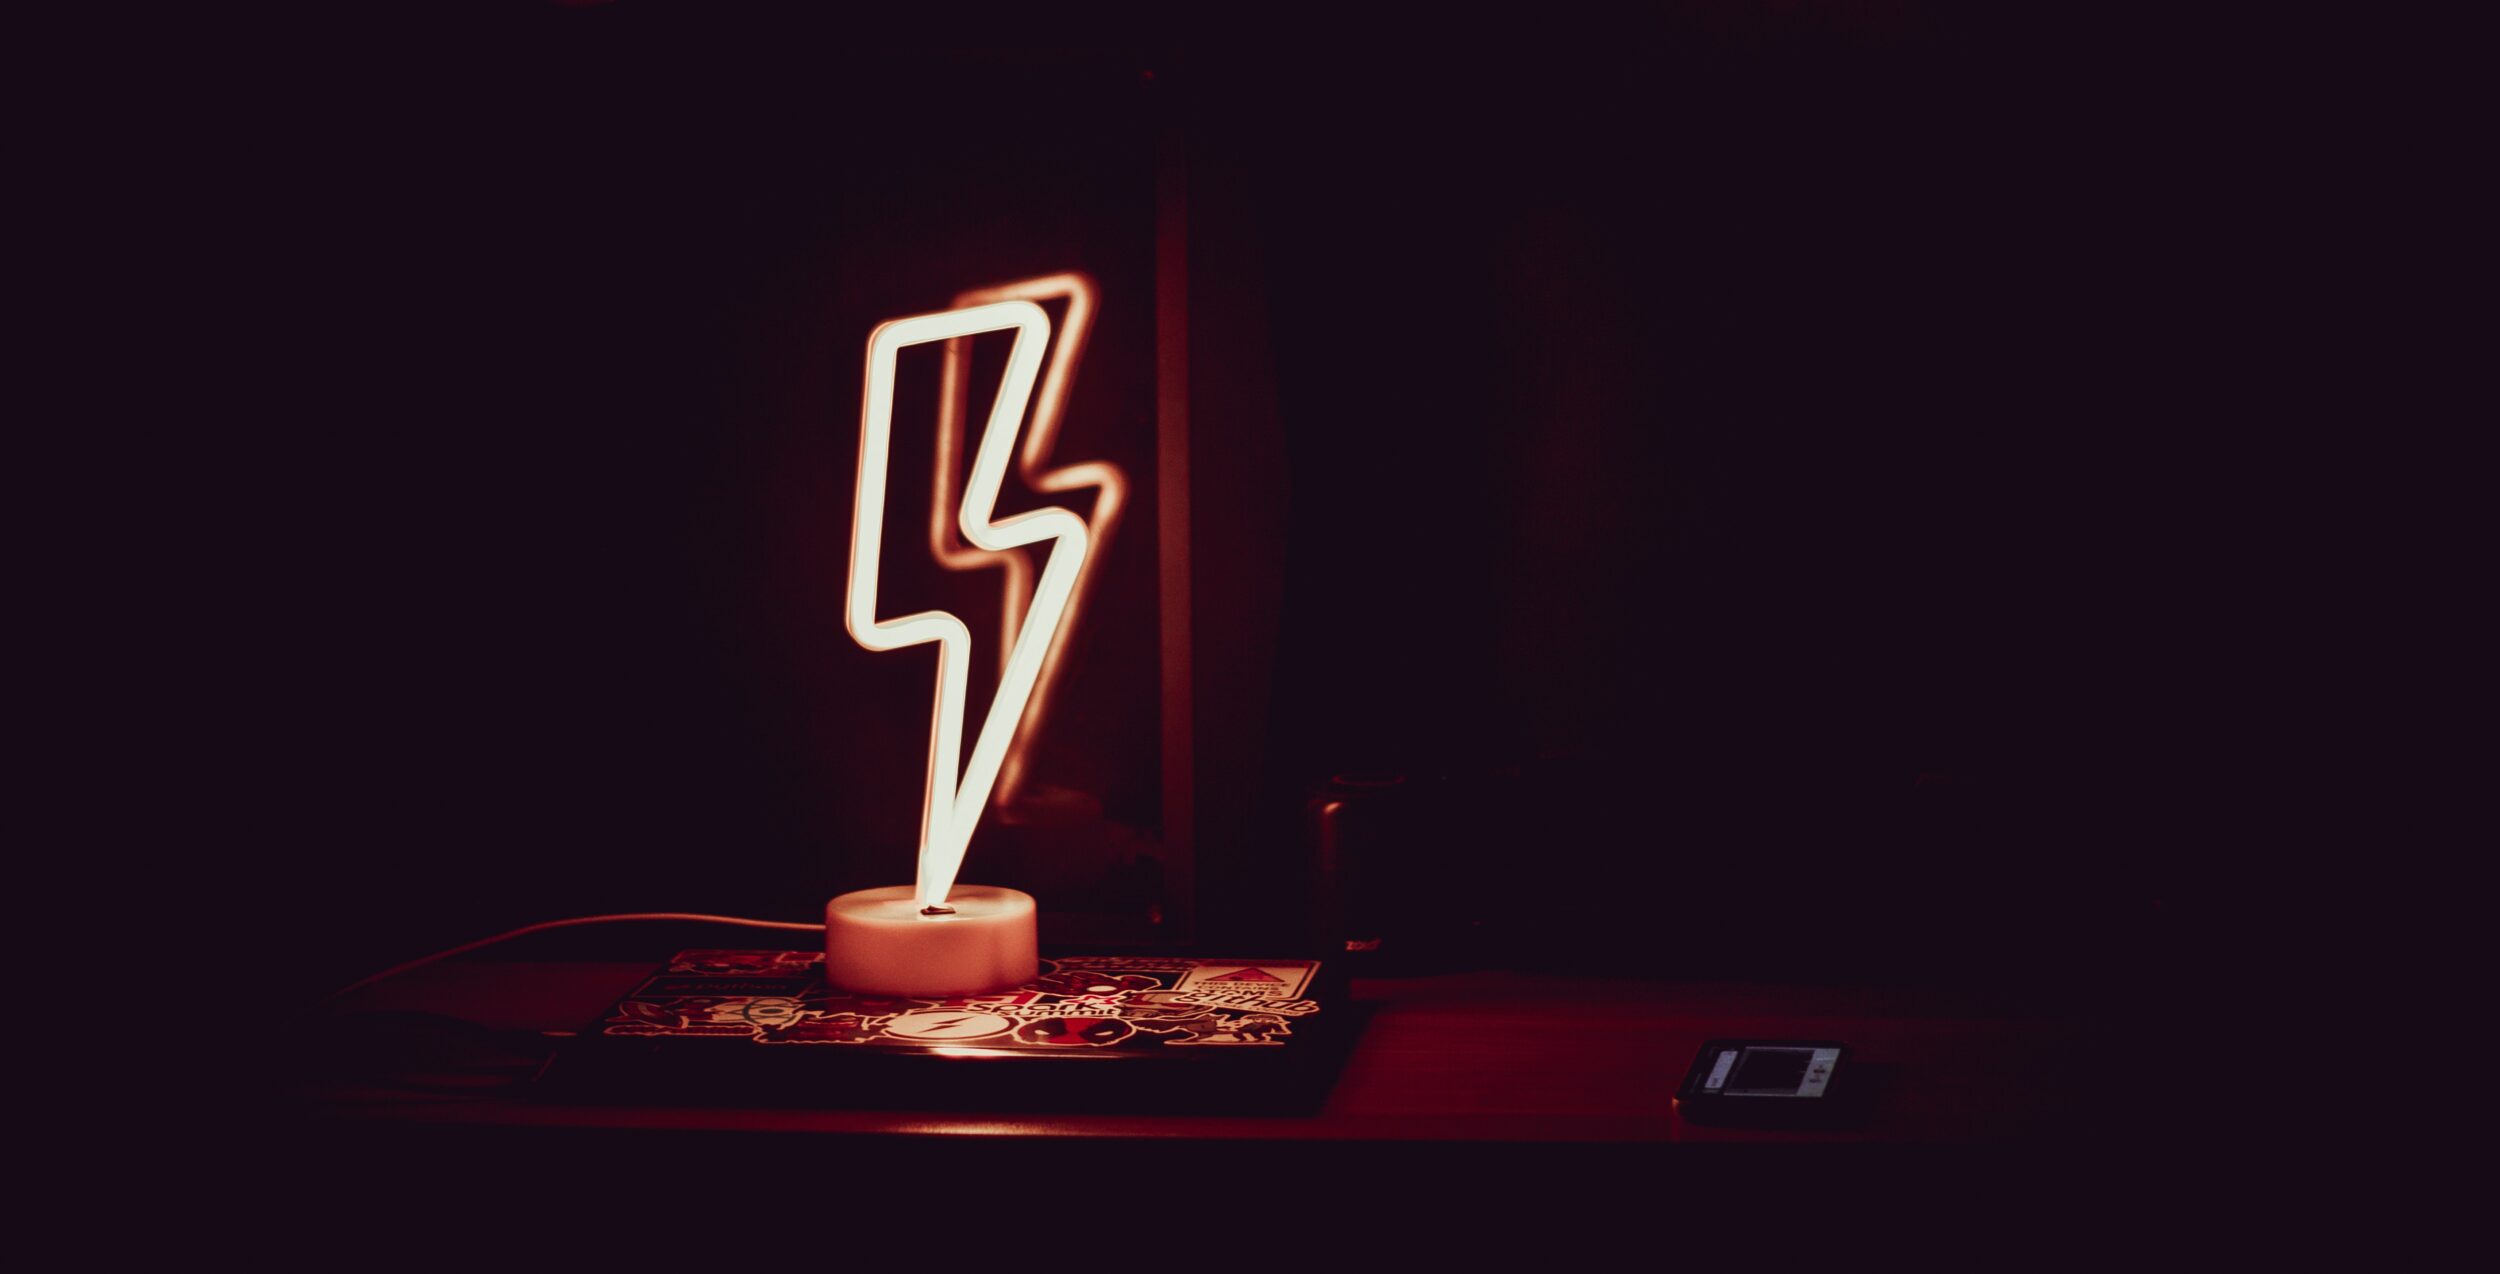 Eine leuchtende Lampe in Form eines Blitzes steht auf einem Tisch im Dunkeln.